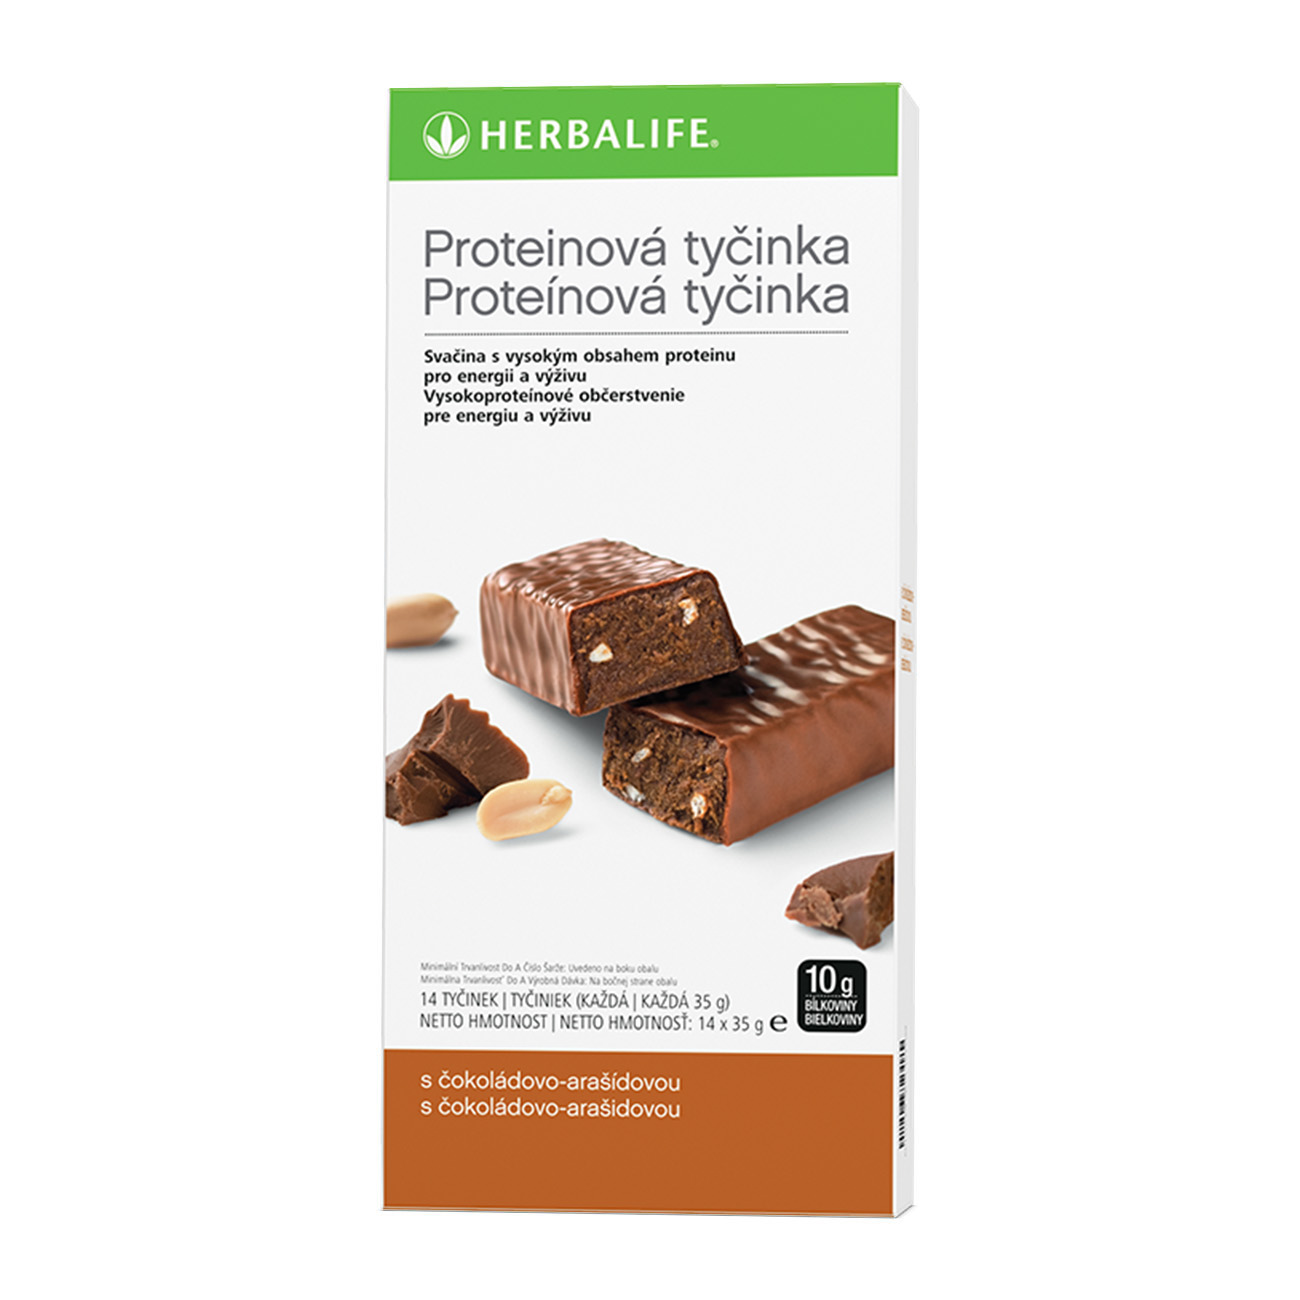 Proteínová tycinka cokoládovo-oriešková.